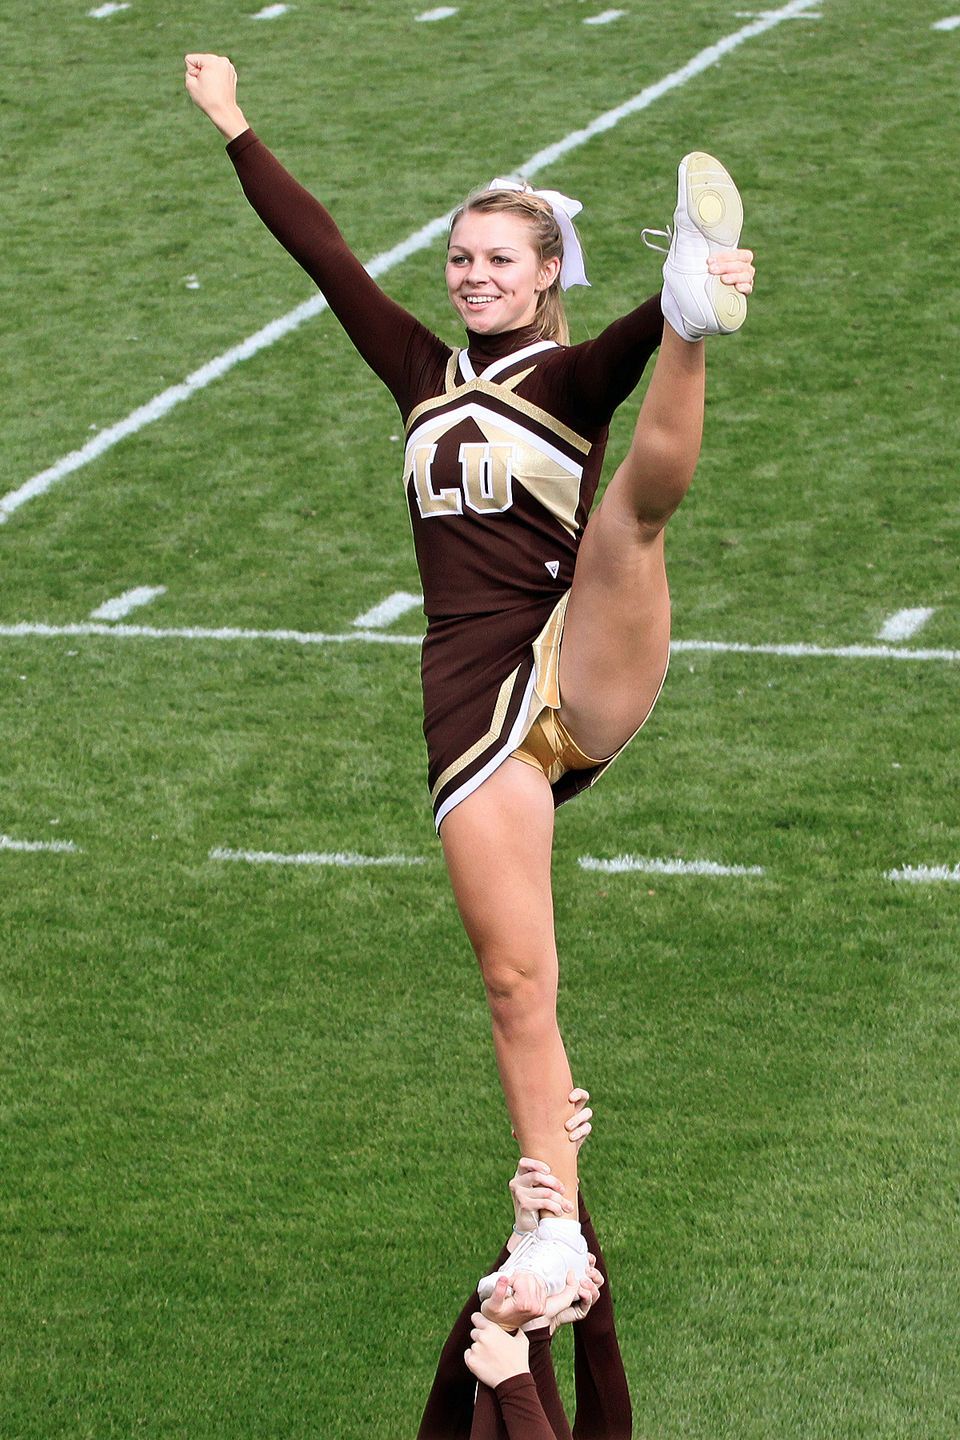 Free college cheerleader upskirt photo